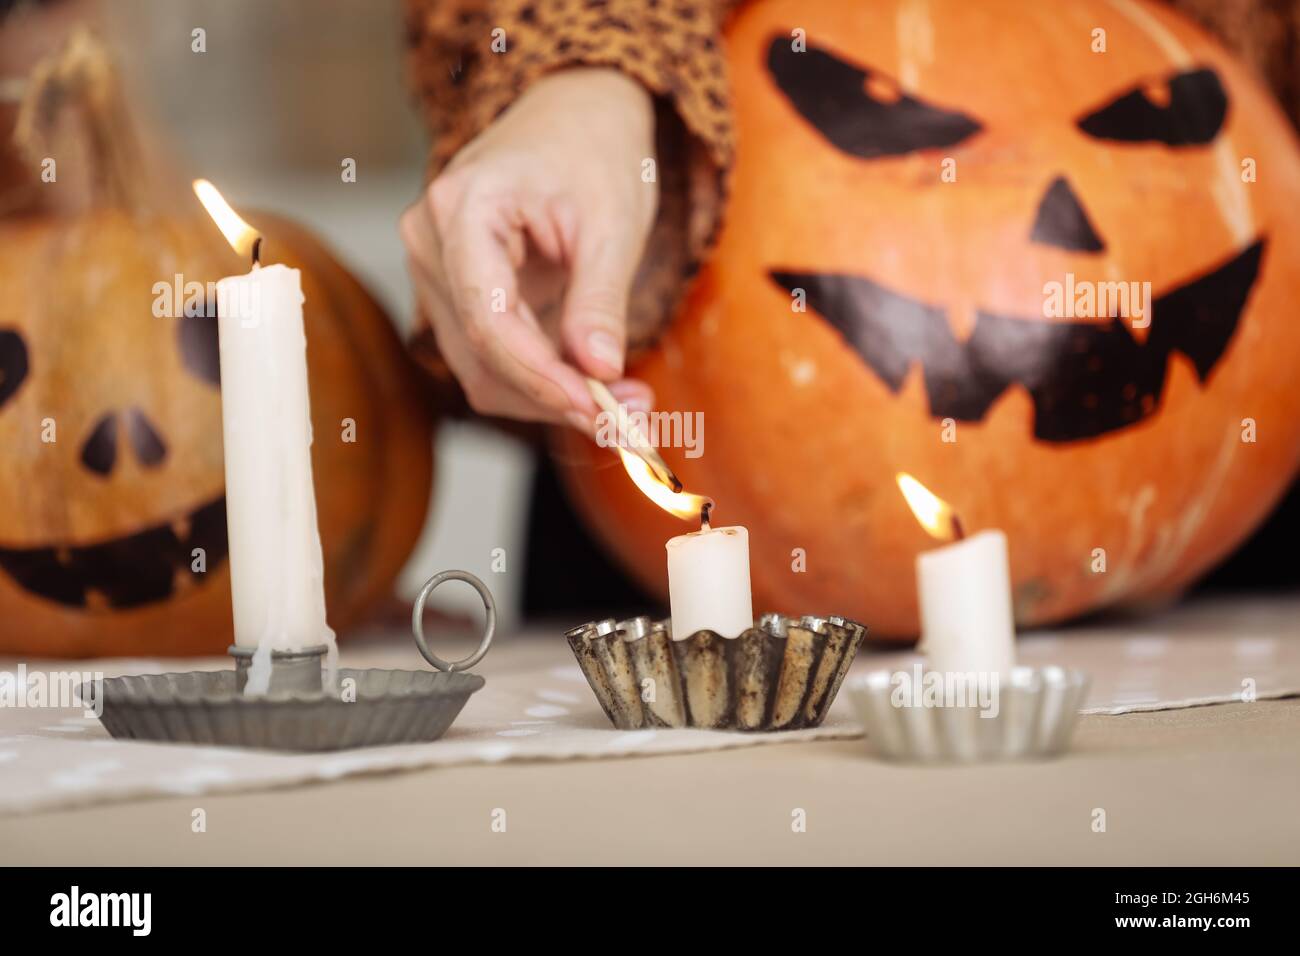 Vacaciones y el concepto del ocio - mano de la mujer con las velas encendidas de los partidos en el hogar en halloween. Calabazas pintadas en un fondo. Tema del horror y hallowe'en Foto de stock